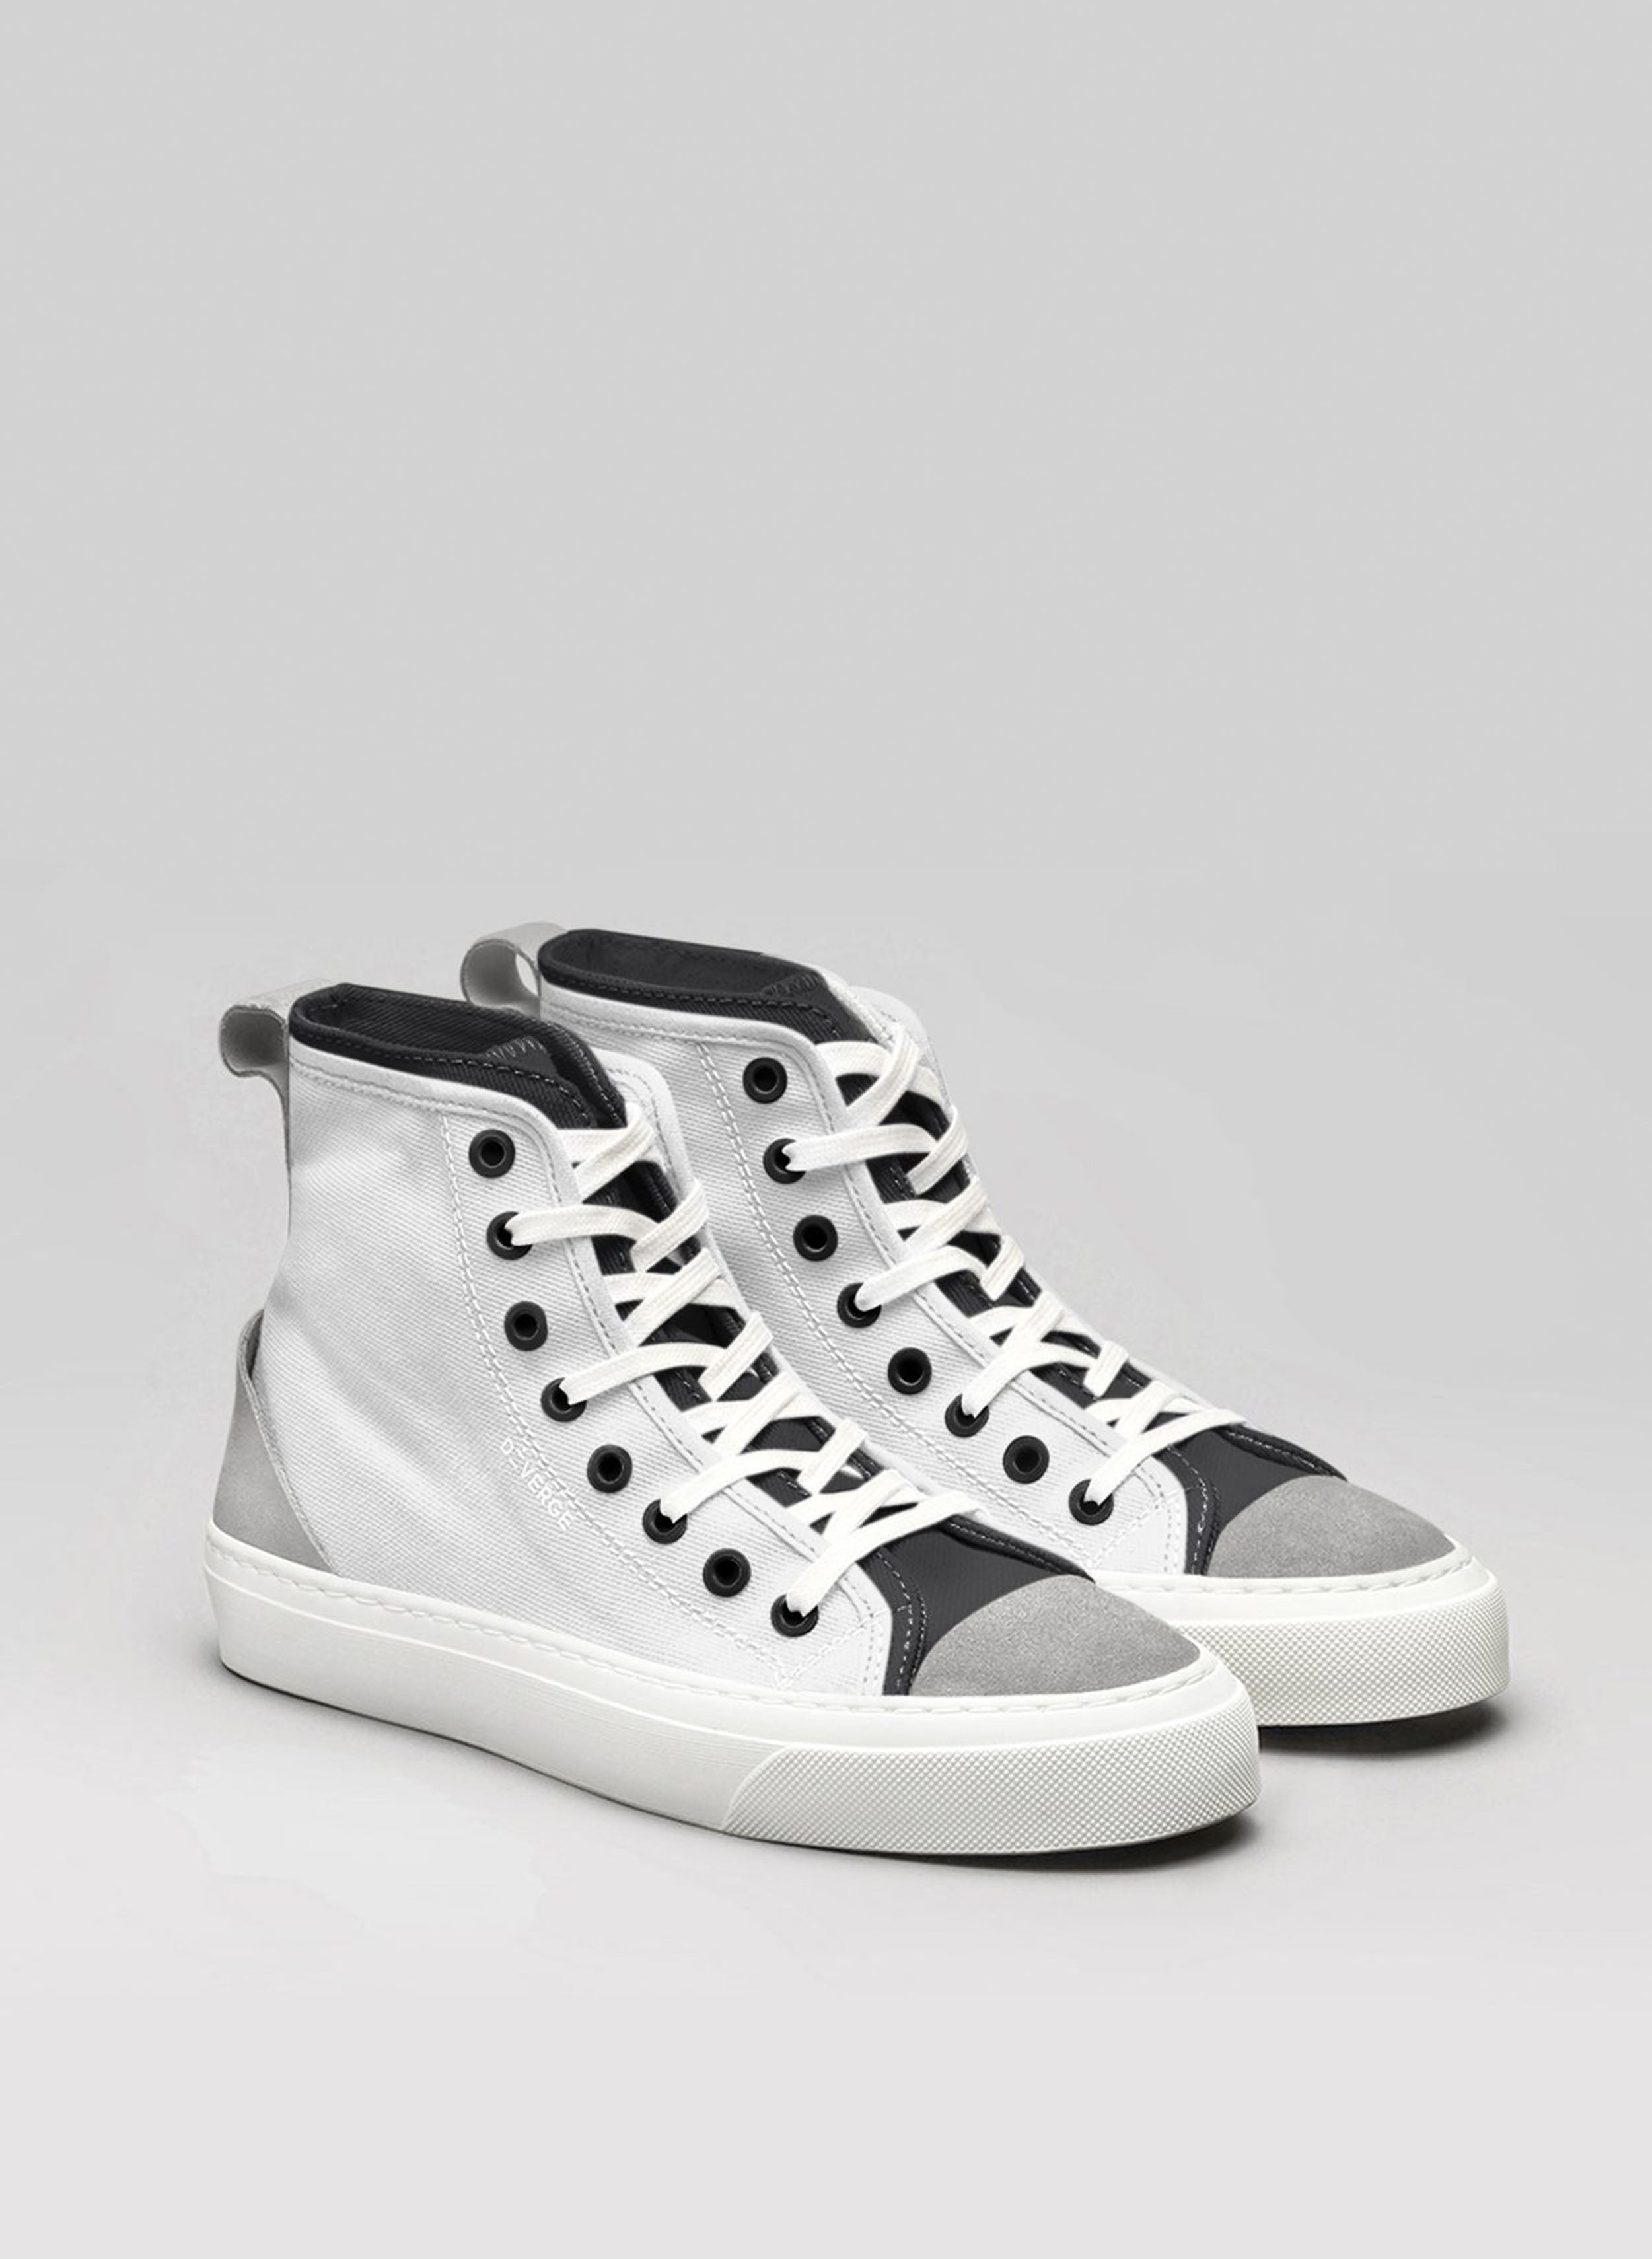 Un par de zapatillas altas personalizadas en blanco y negro sneakers de Diverge.